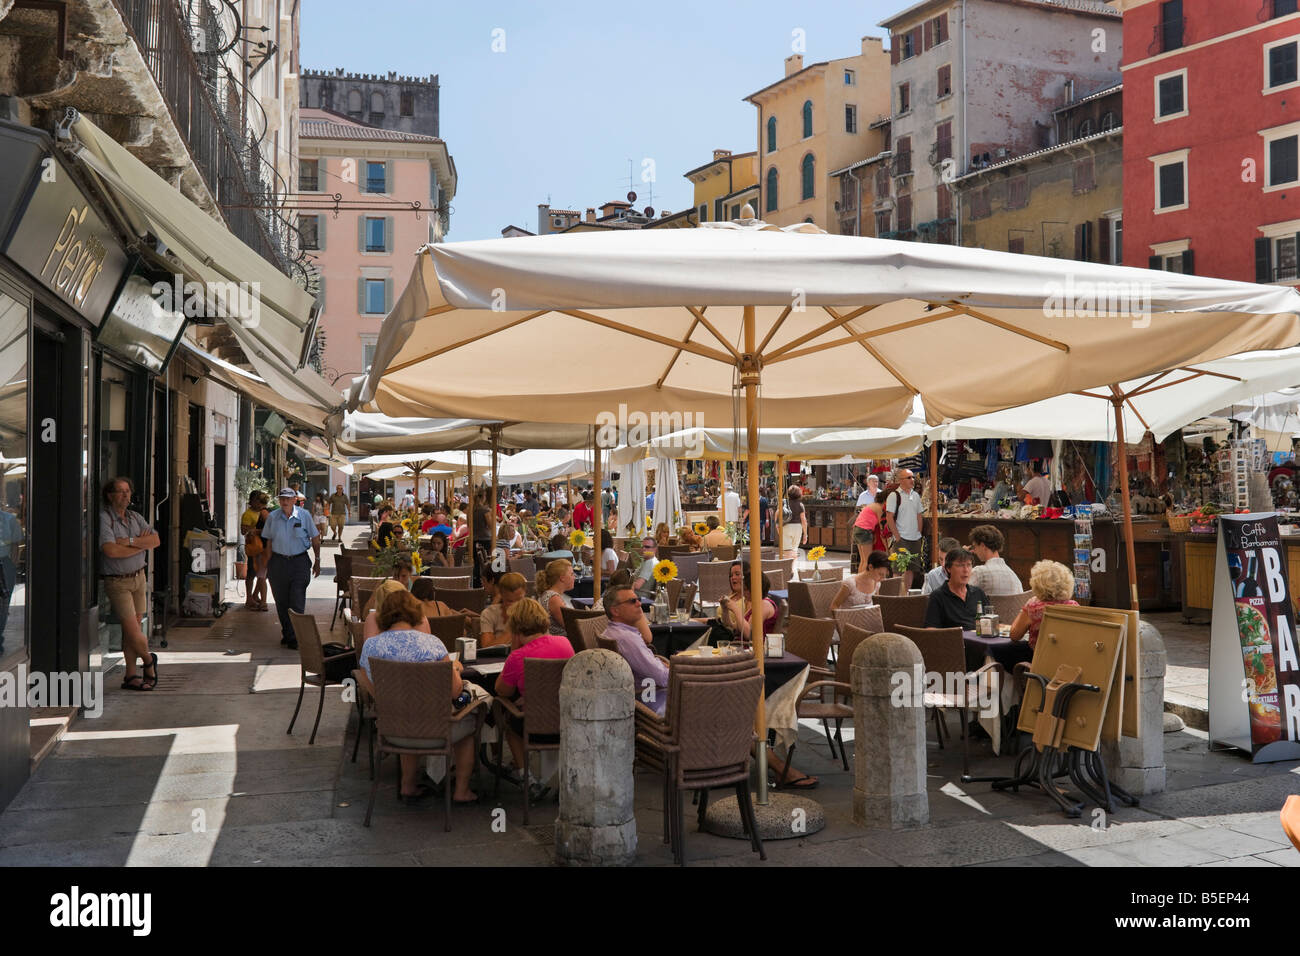 Street Cafe con puestos de mercado detrás, la Piazza delle Erbe, Verona, Véneto, Italia Foto de stock